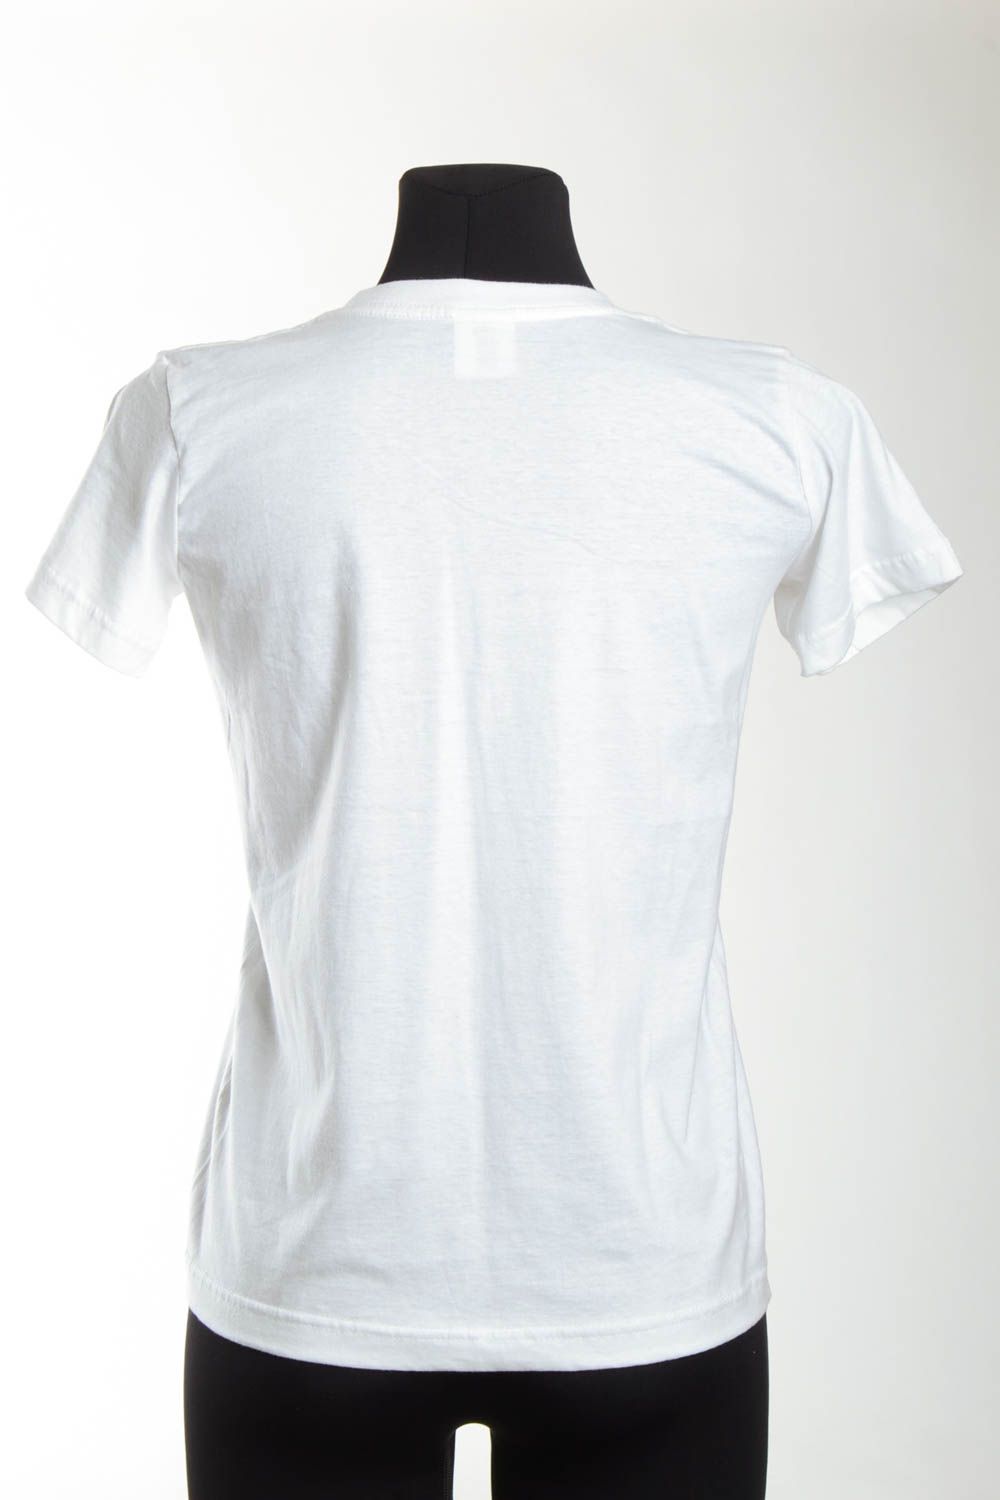 Белая футболка ручной работы женская одежда футболка с рисунком авторским фото 5